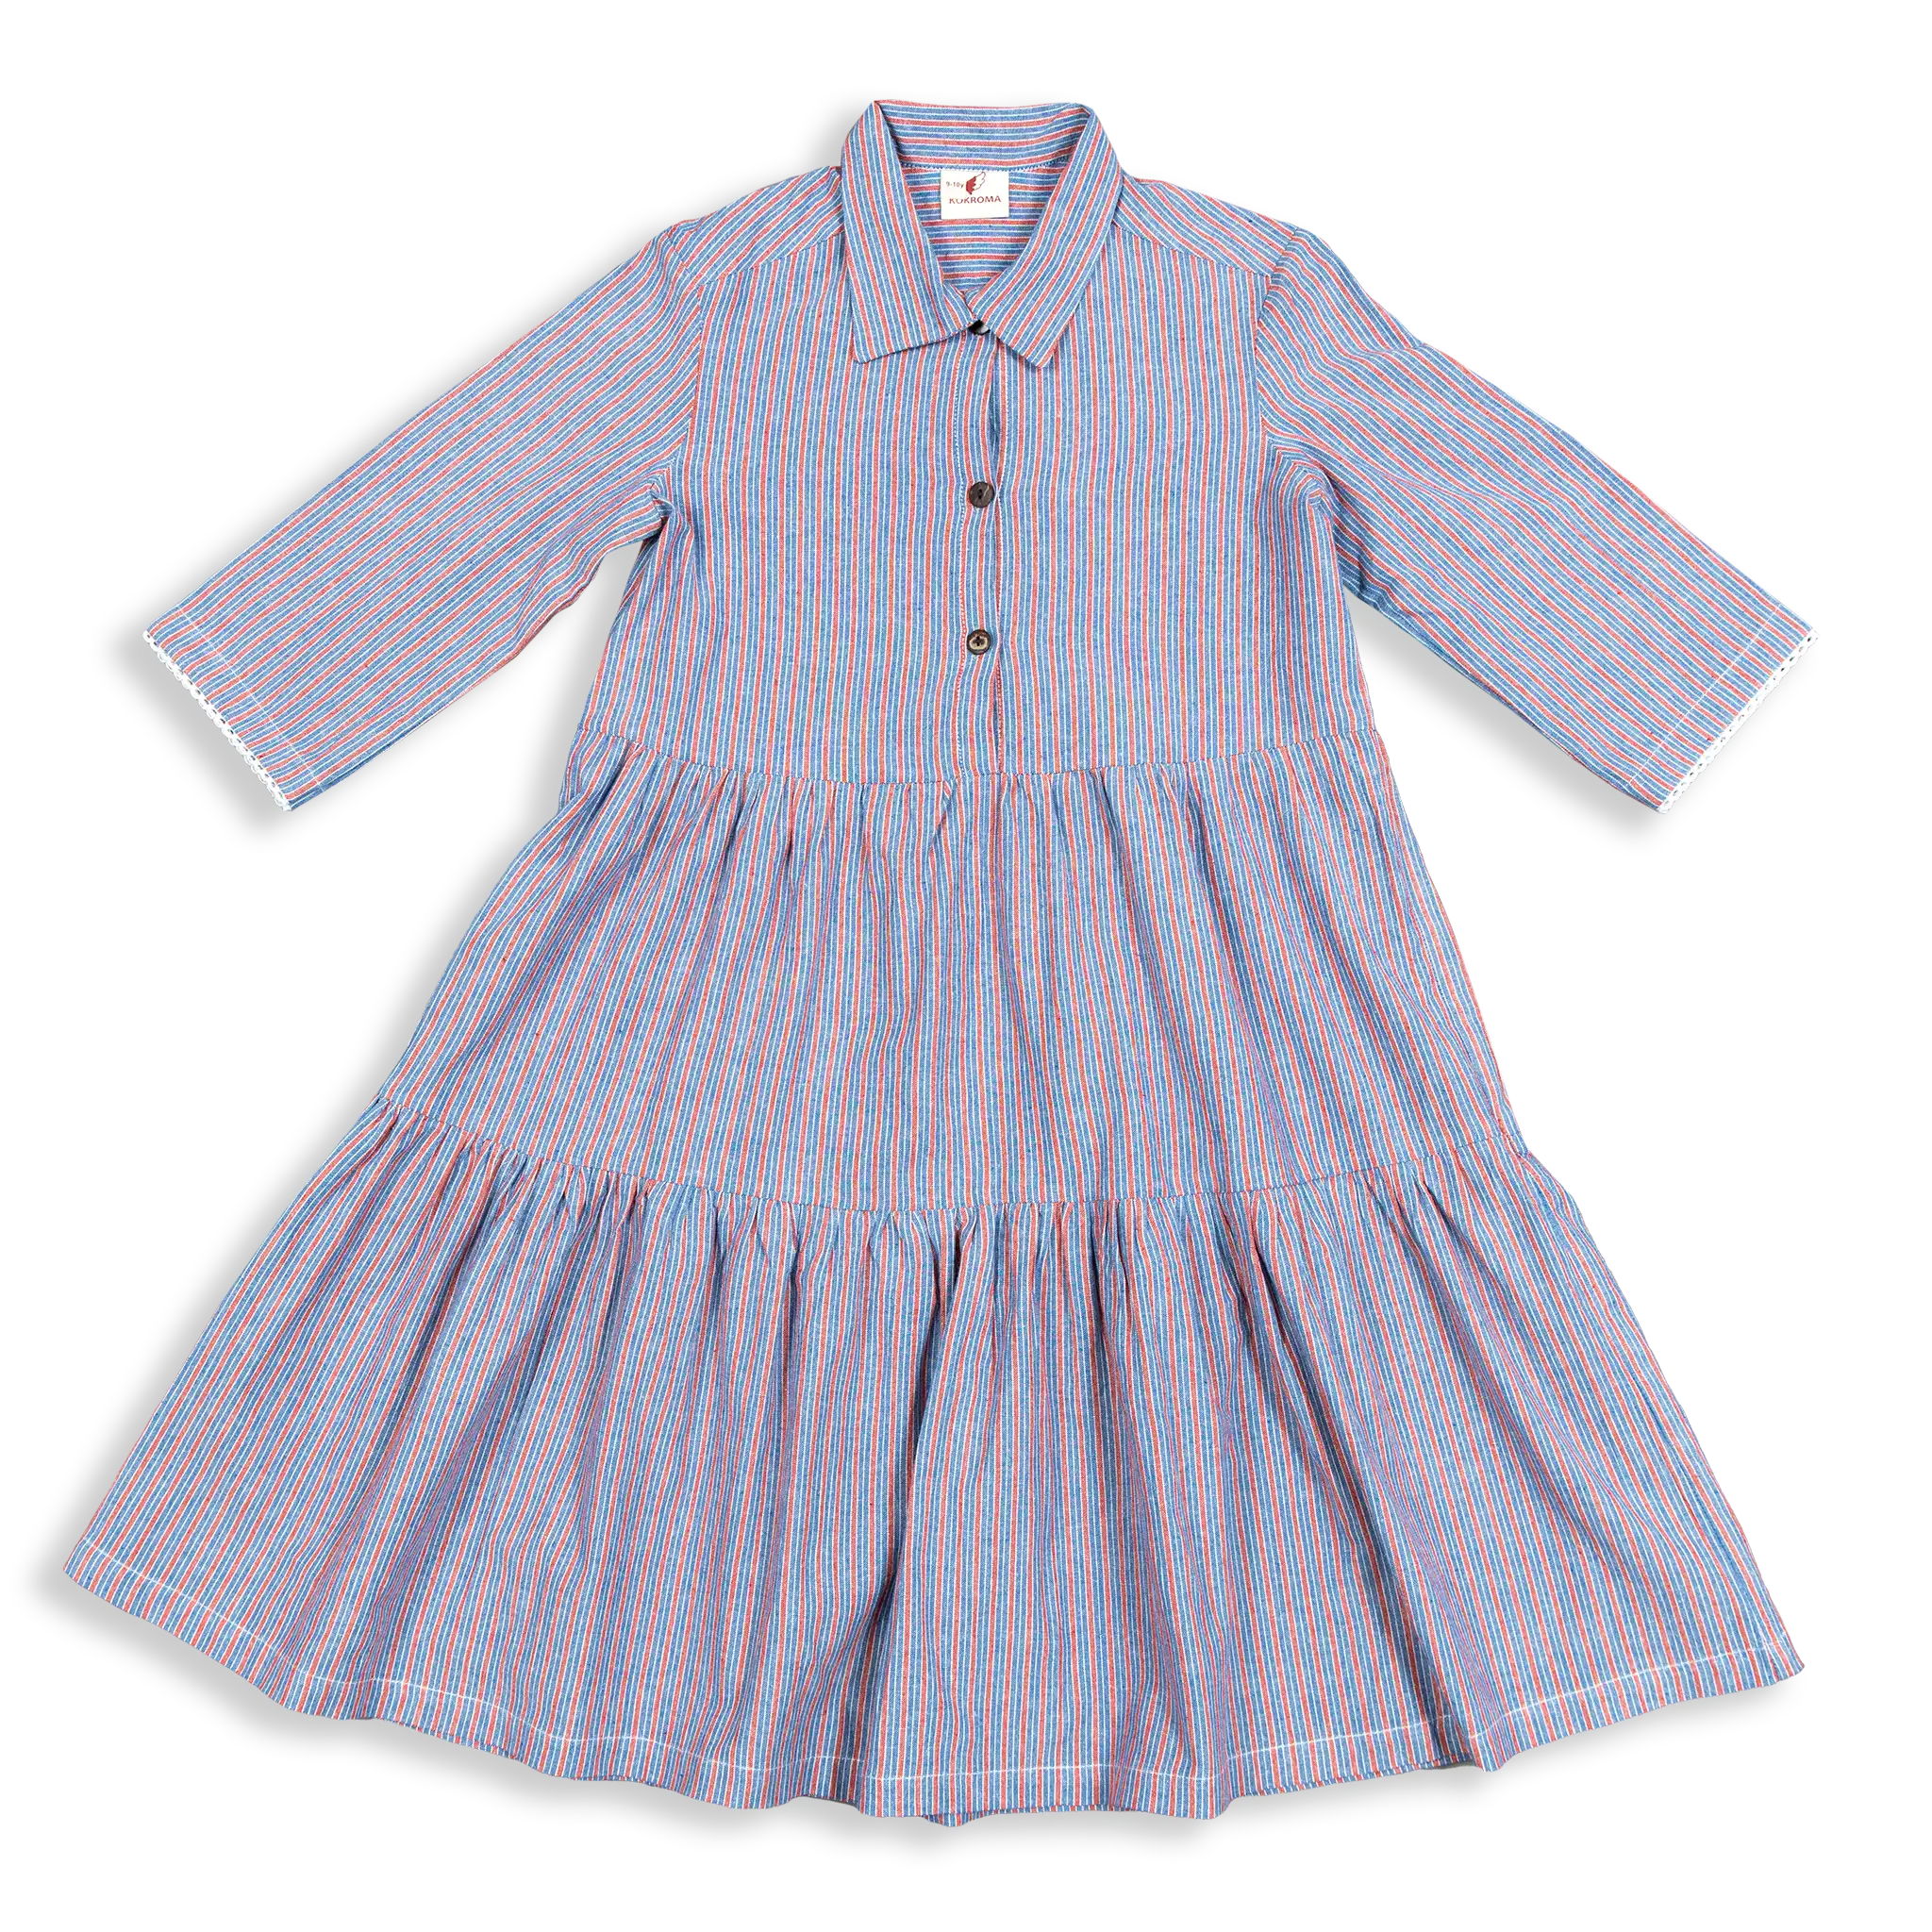 Terraced Hills Twirly Girl Dress (8y-12y)